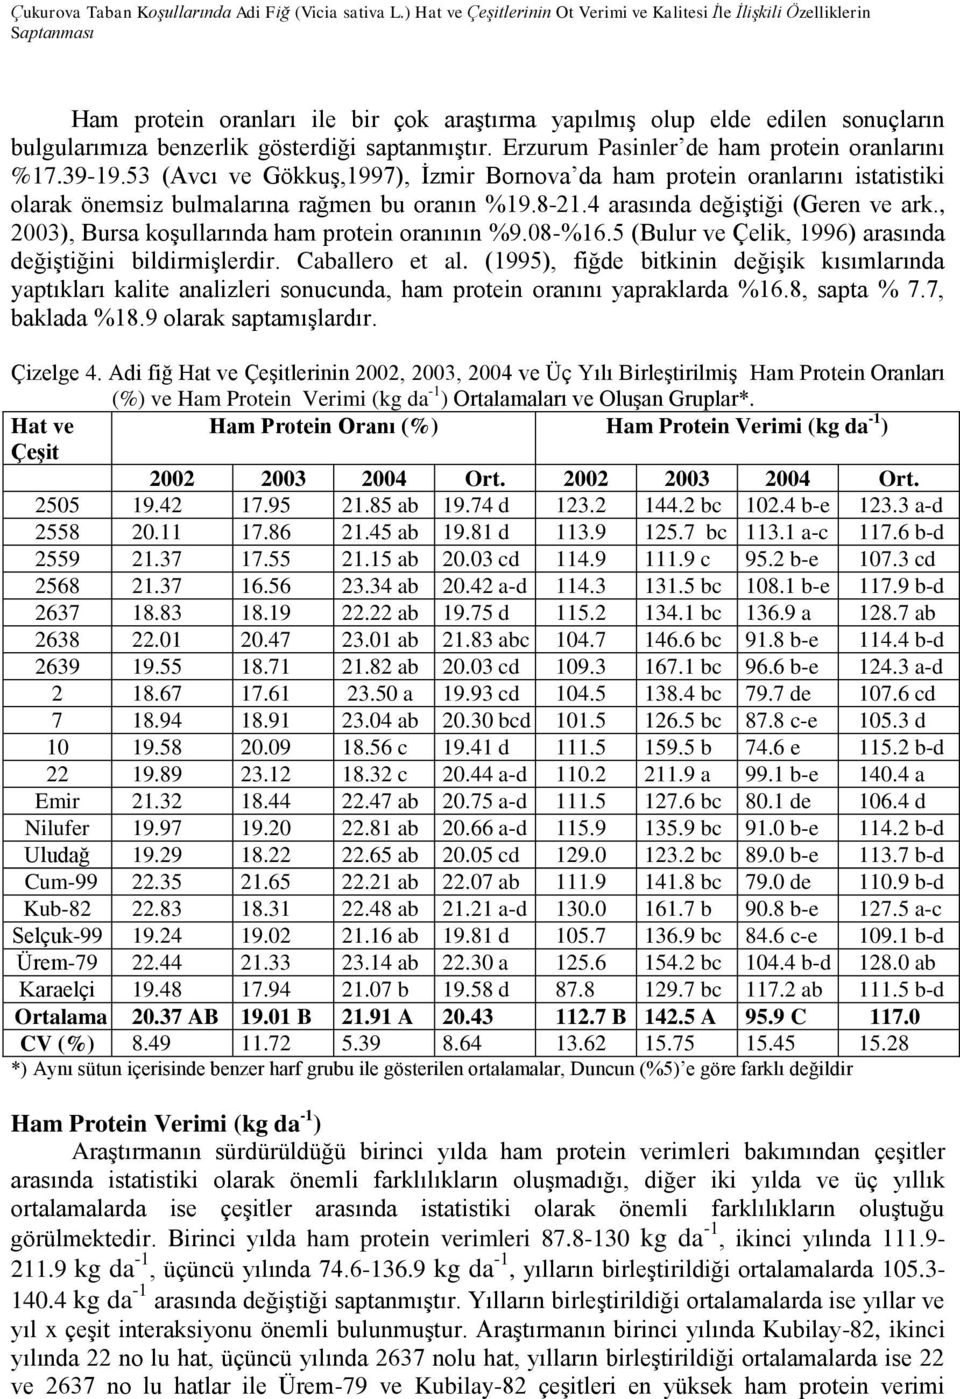 saptanmıştır. Erzurum Pasinler de ham protein oranlarını %17.39-19.53 (Avcı ve Gökkuş,1997), İzmir Bornova da ham protein oranlarını istatistiki olarak önemsiz bulmalarına rağmen bu oranın %19.8-21.